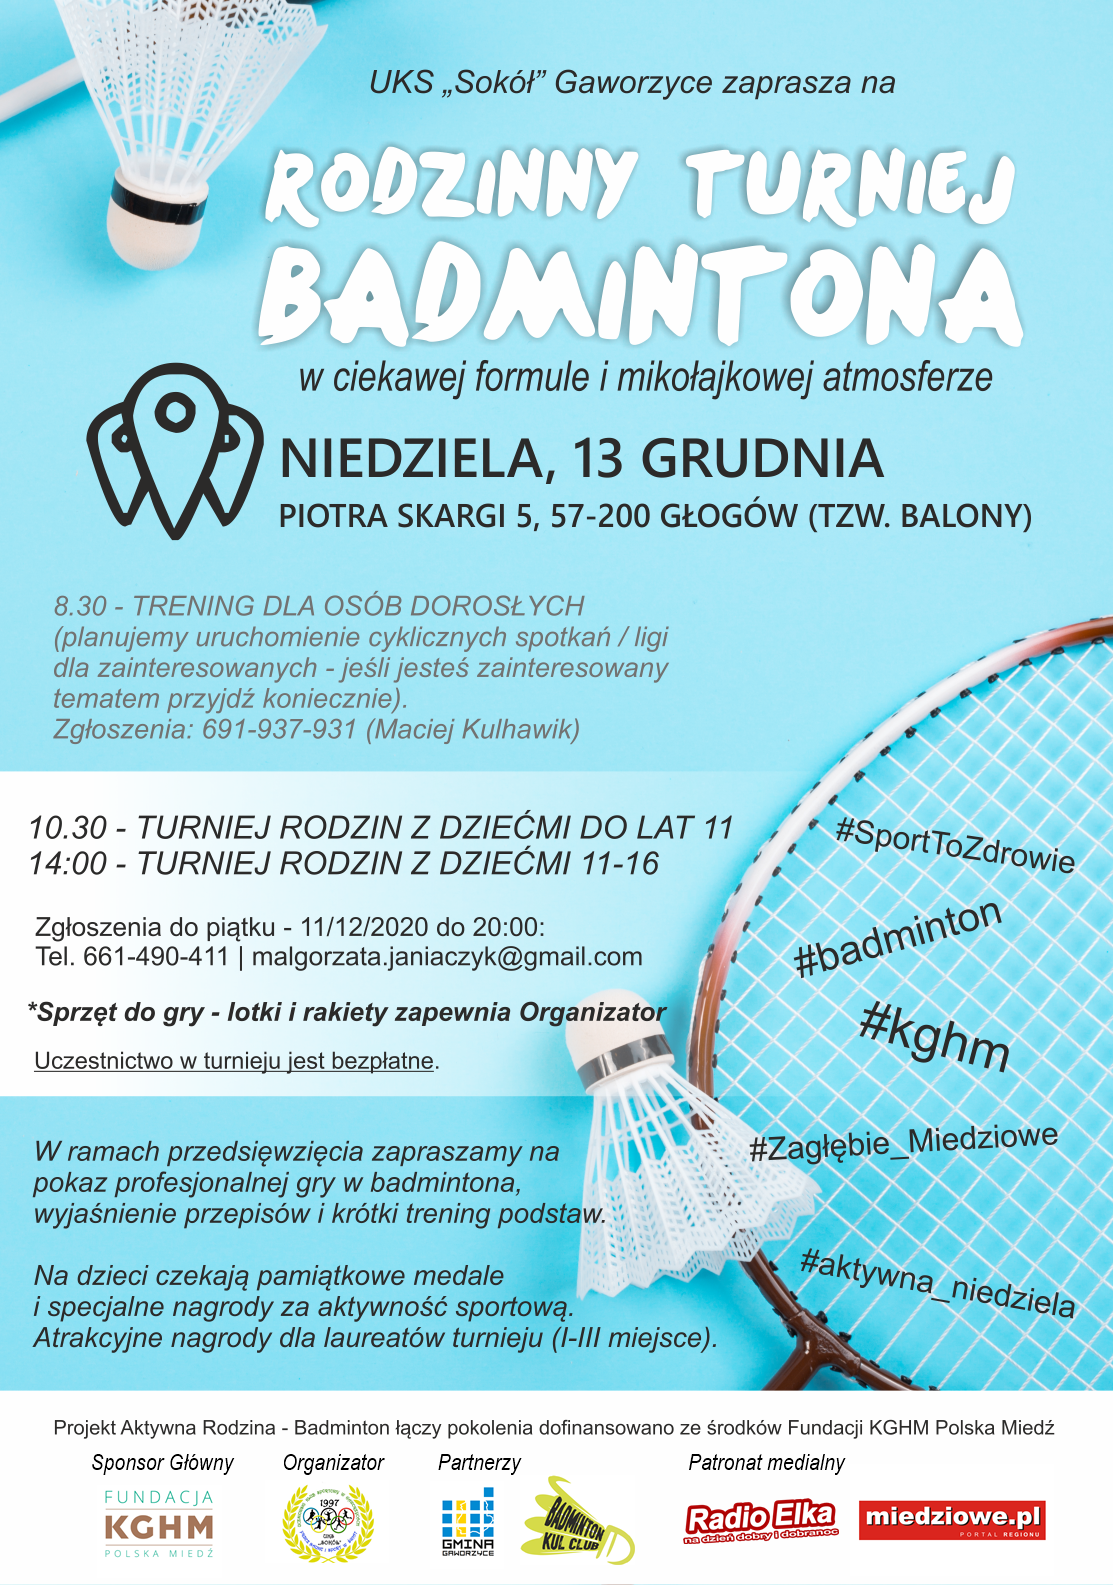 Informacja o turnieju badmintona realizowanym przez UKS Sokół w niedzielę 13 grudnia 2020 w Głogowie